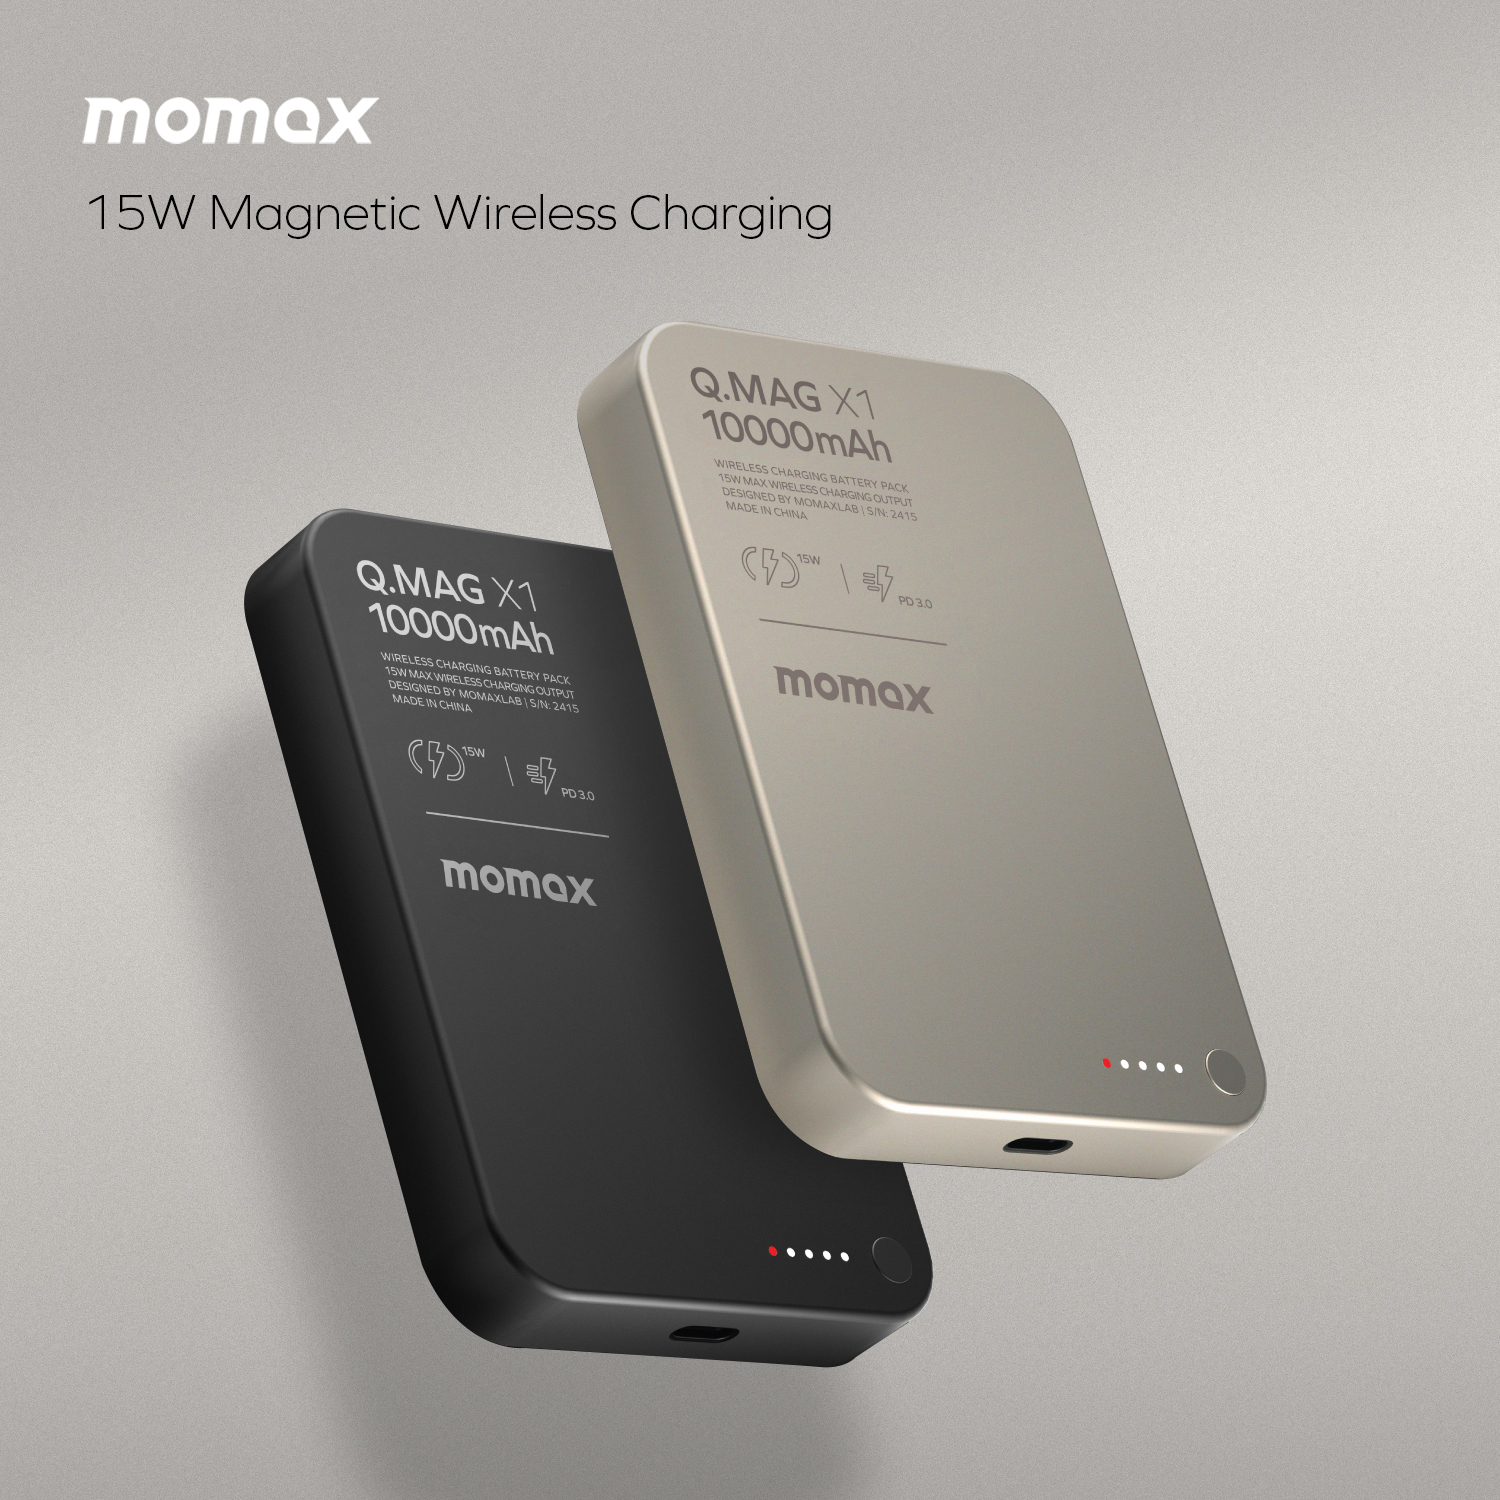 پاوربانک بیسیم  مگنتیک 15 وات 10000 میلی‌آمپر مومکس مدل Momax Q.Mag X1 IP117